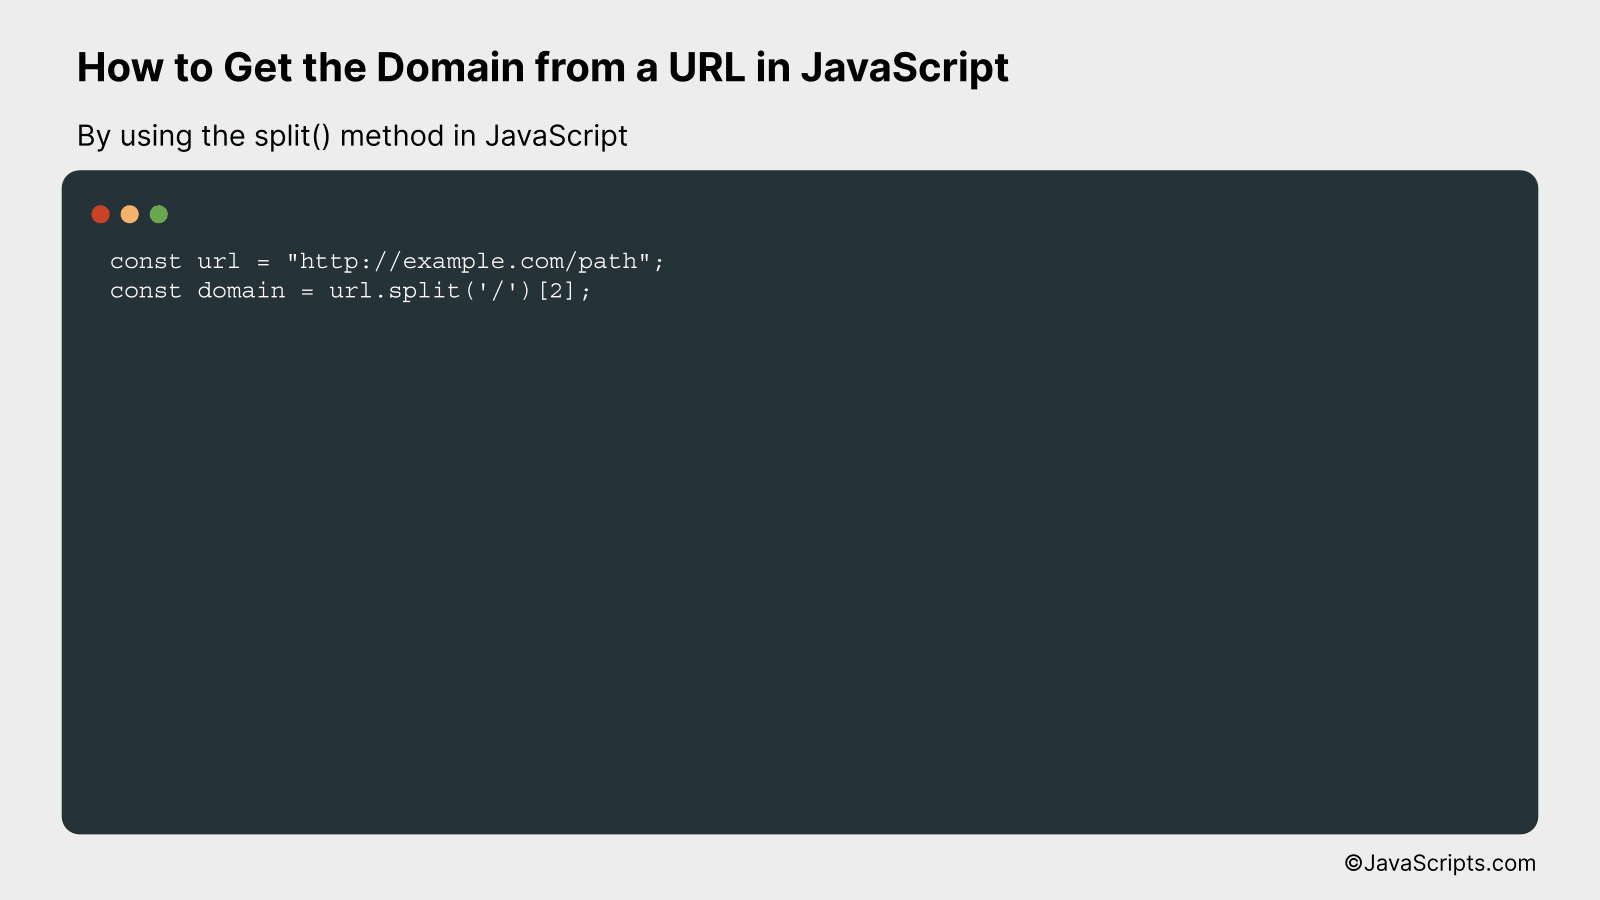 By using the split() method in JavaScript